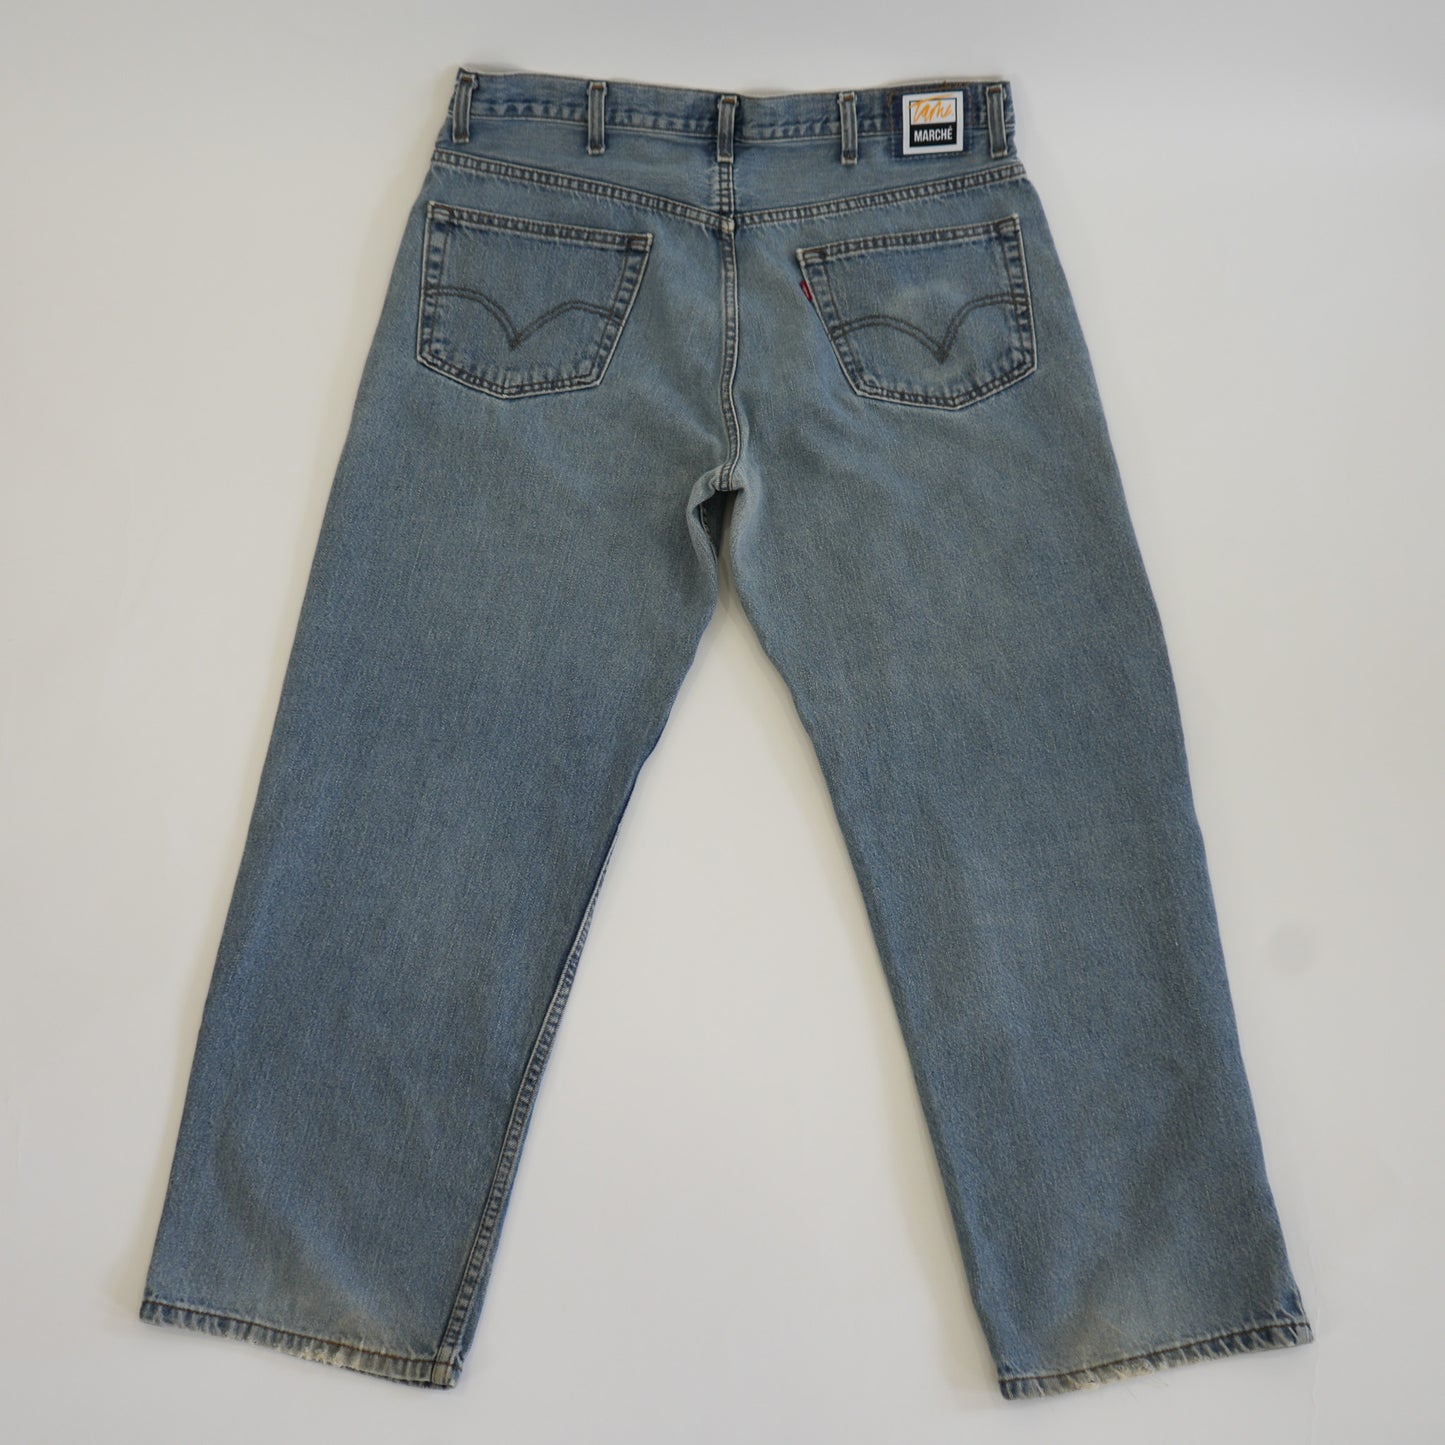 Regal Patchwork Jeans Light Wash (W 40)